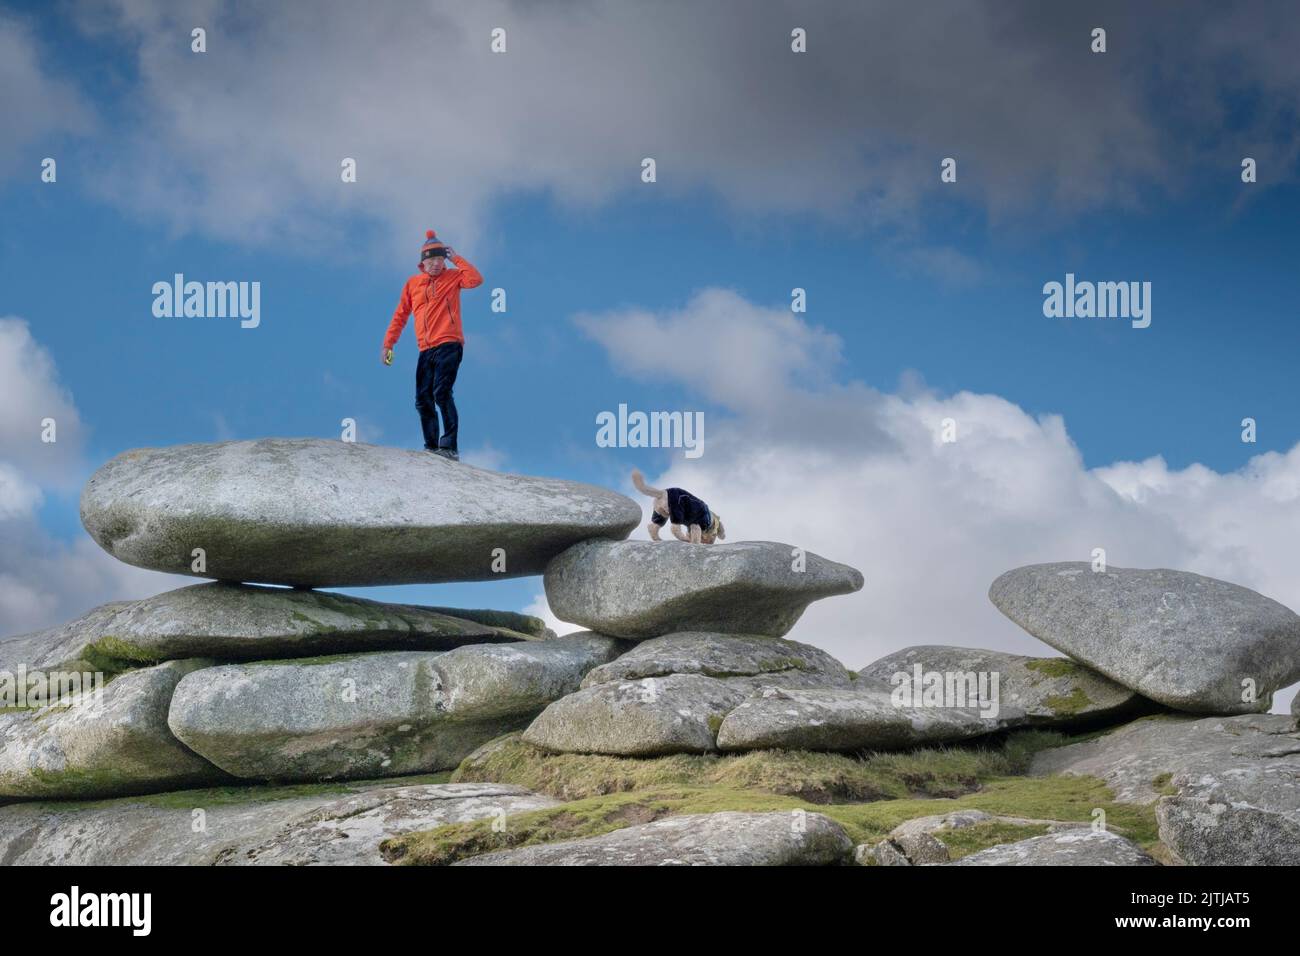 Un camminatore che indossa una giacca rossa brillante che si erge su un enorme stack di rocce di granito sulla cima della collina di Stowes sull'aspro Bodmin Moor in Cornovaglia negli Stati Uniti Foto Stock